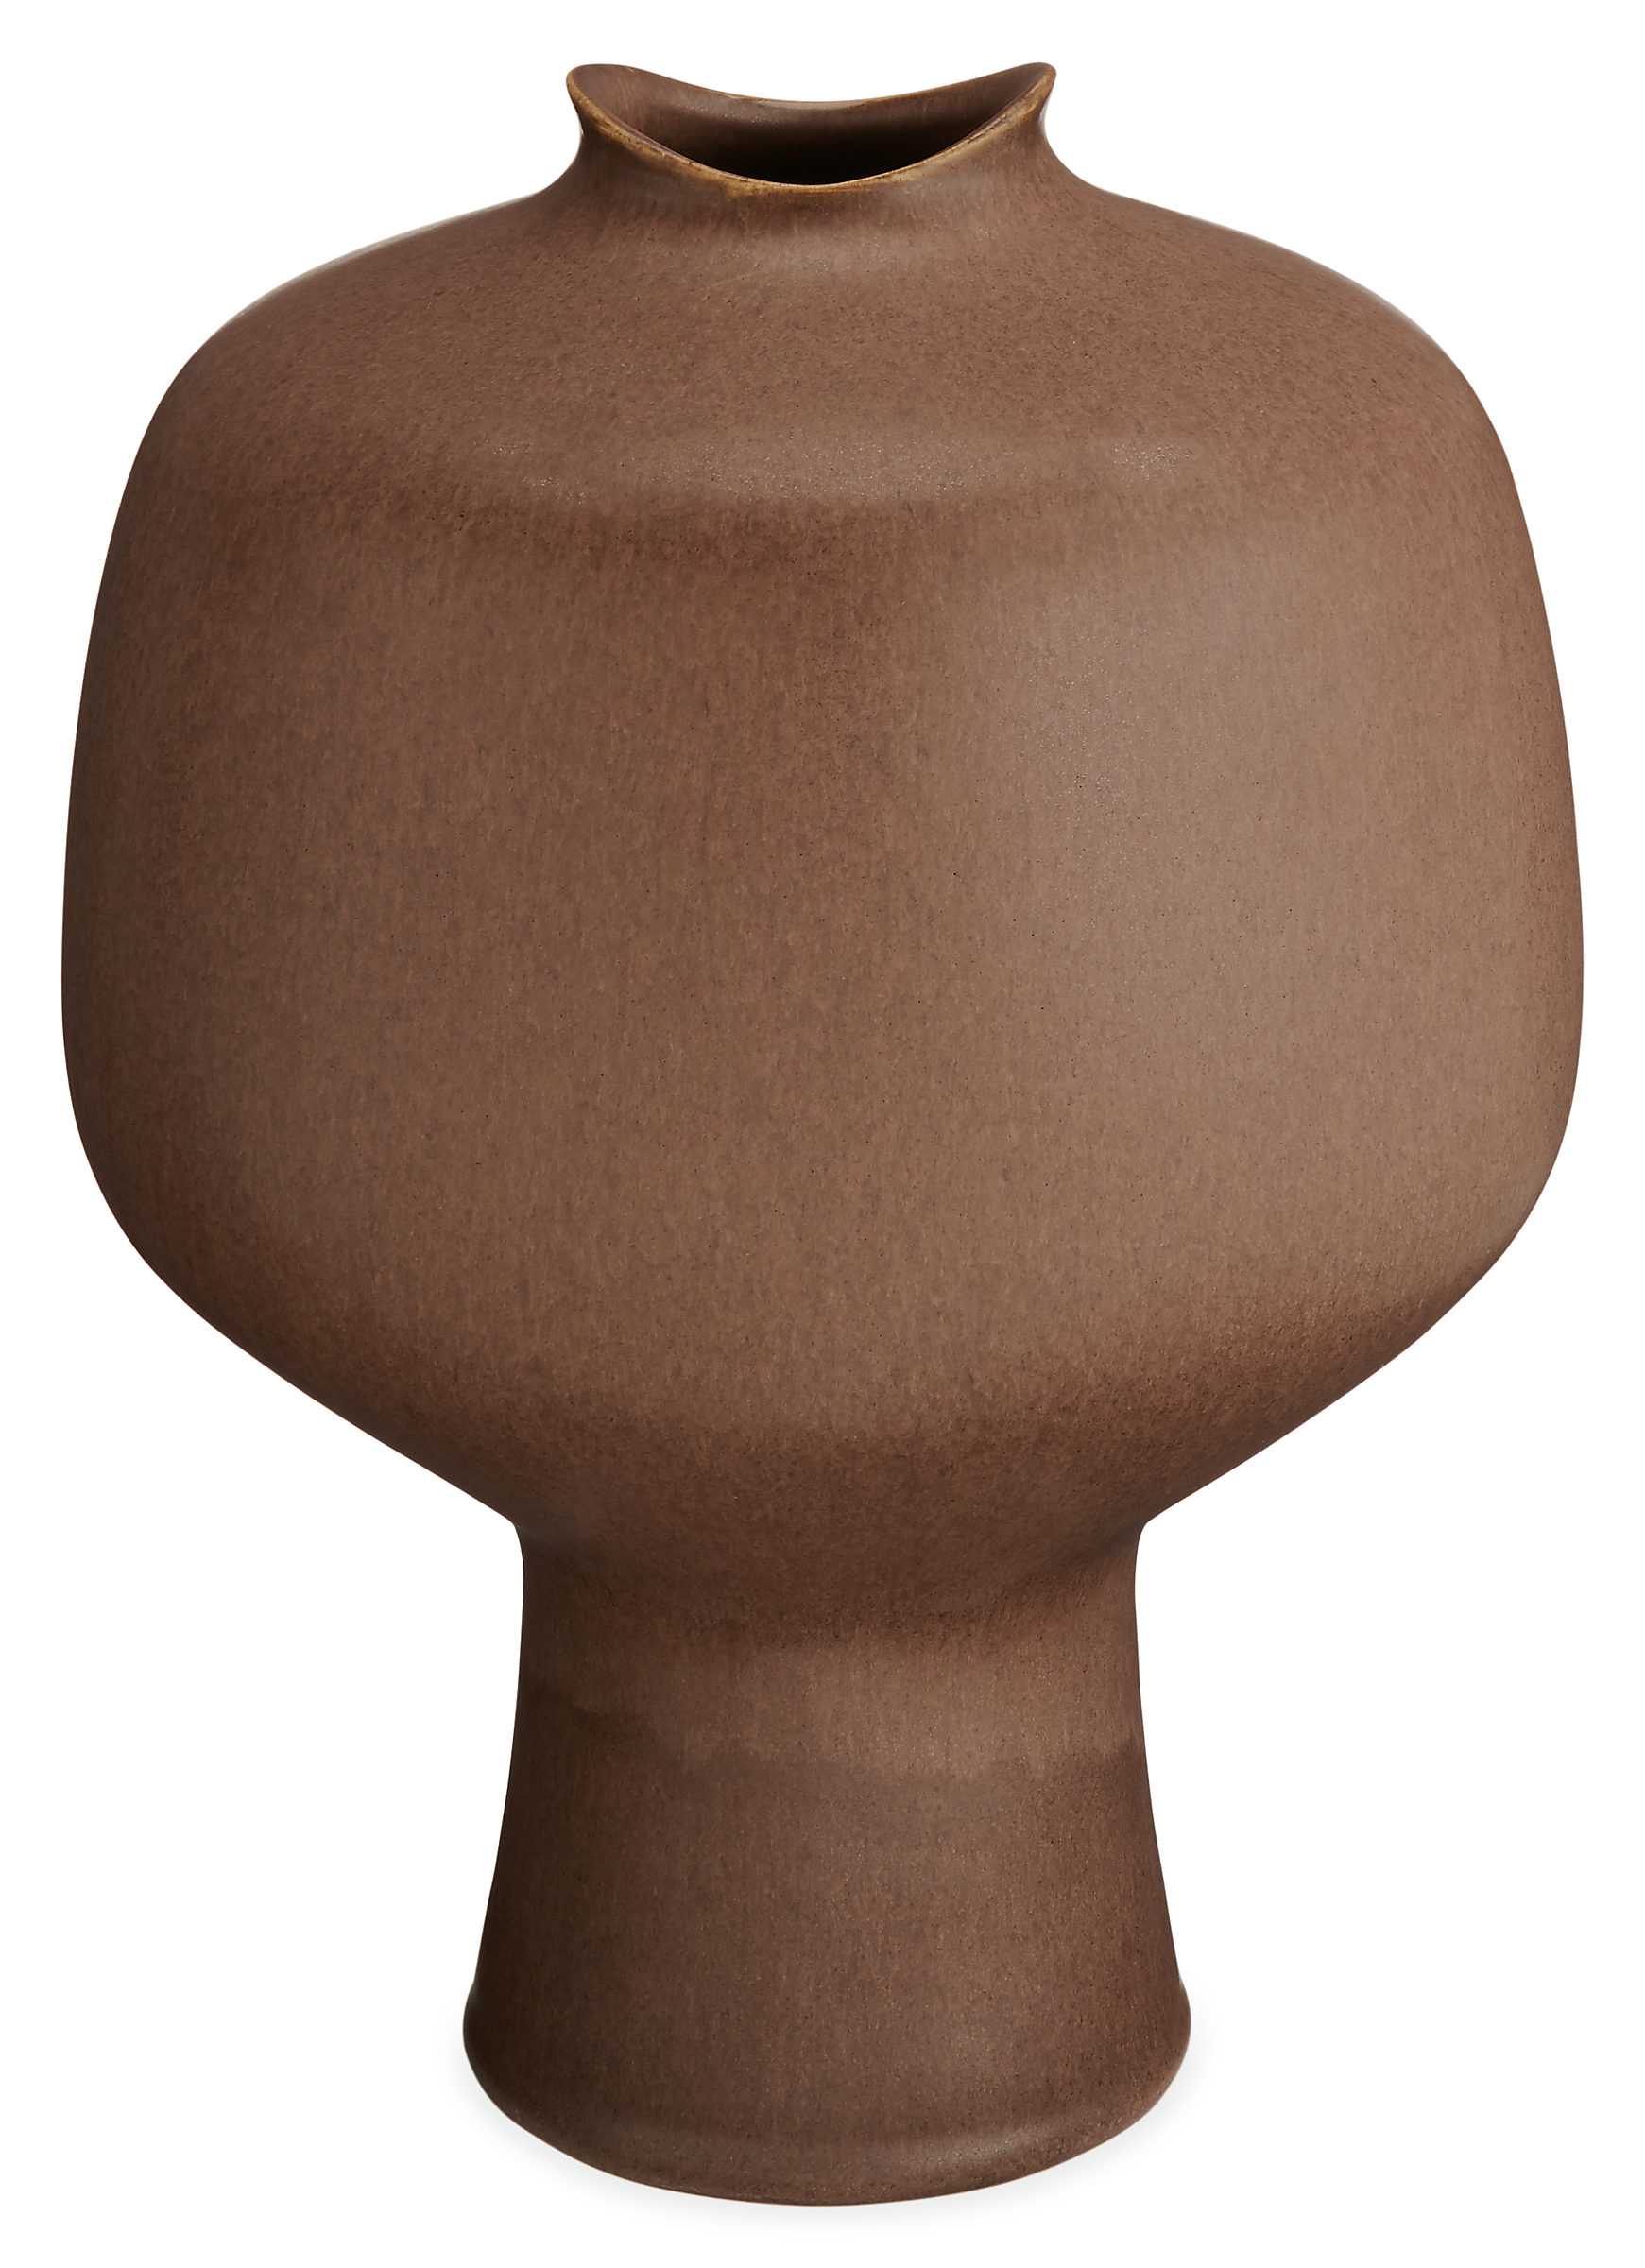 Althea Medium Vase